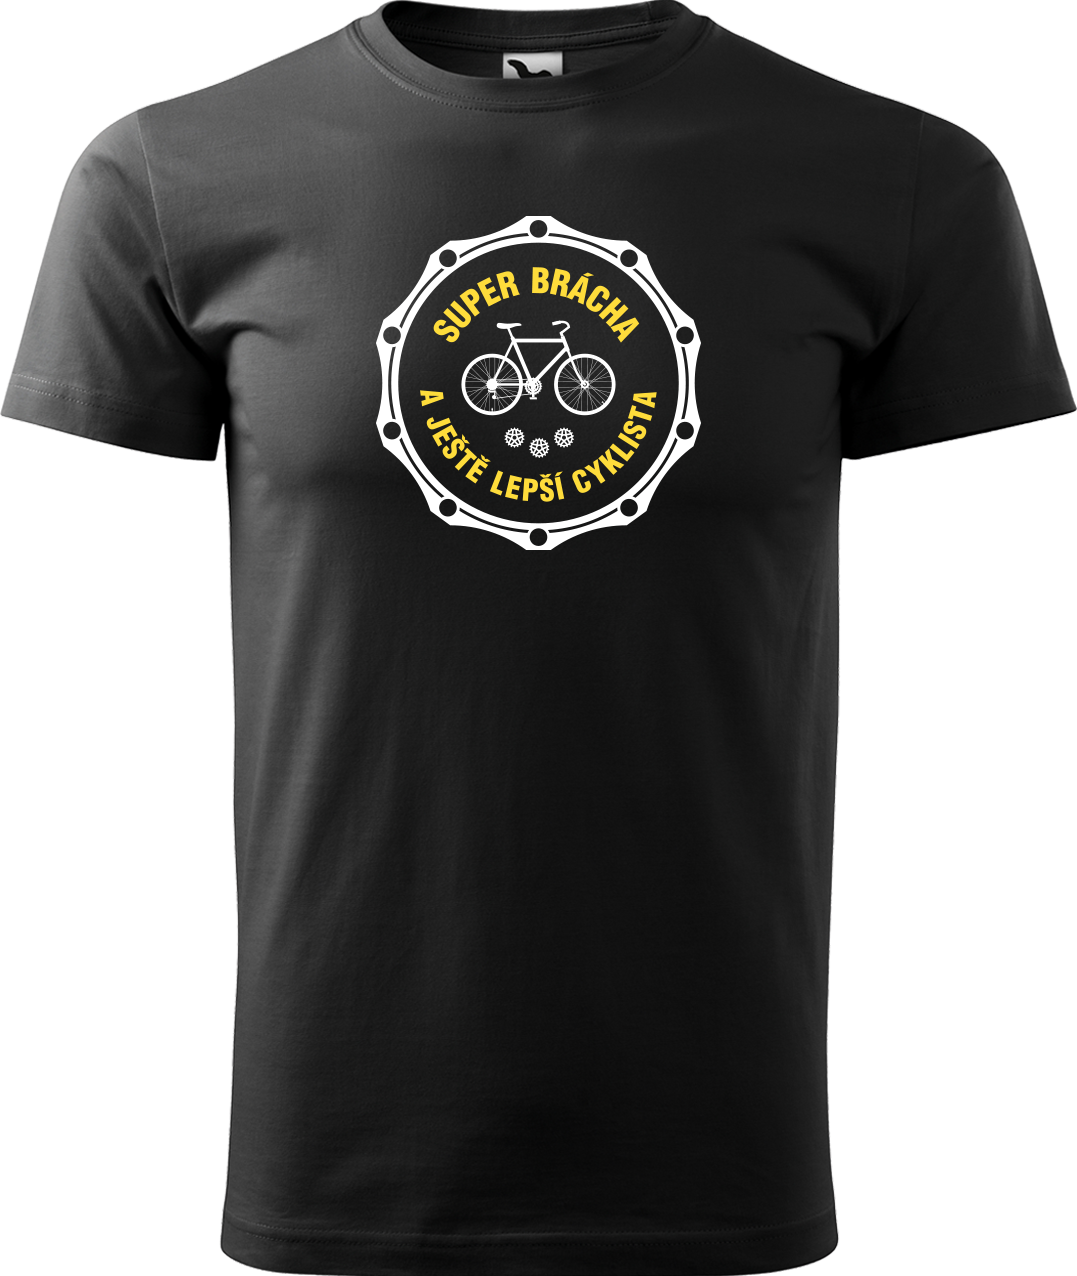 Pánské tričko pro cyklistu - Super brácha a ještě lepší cyklista Velikost: S, Barva: Černá (01)